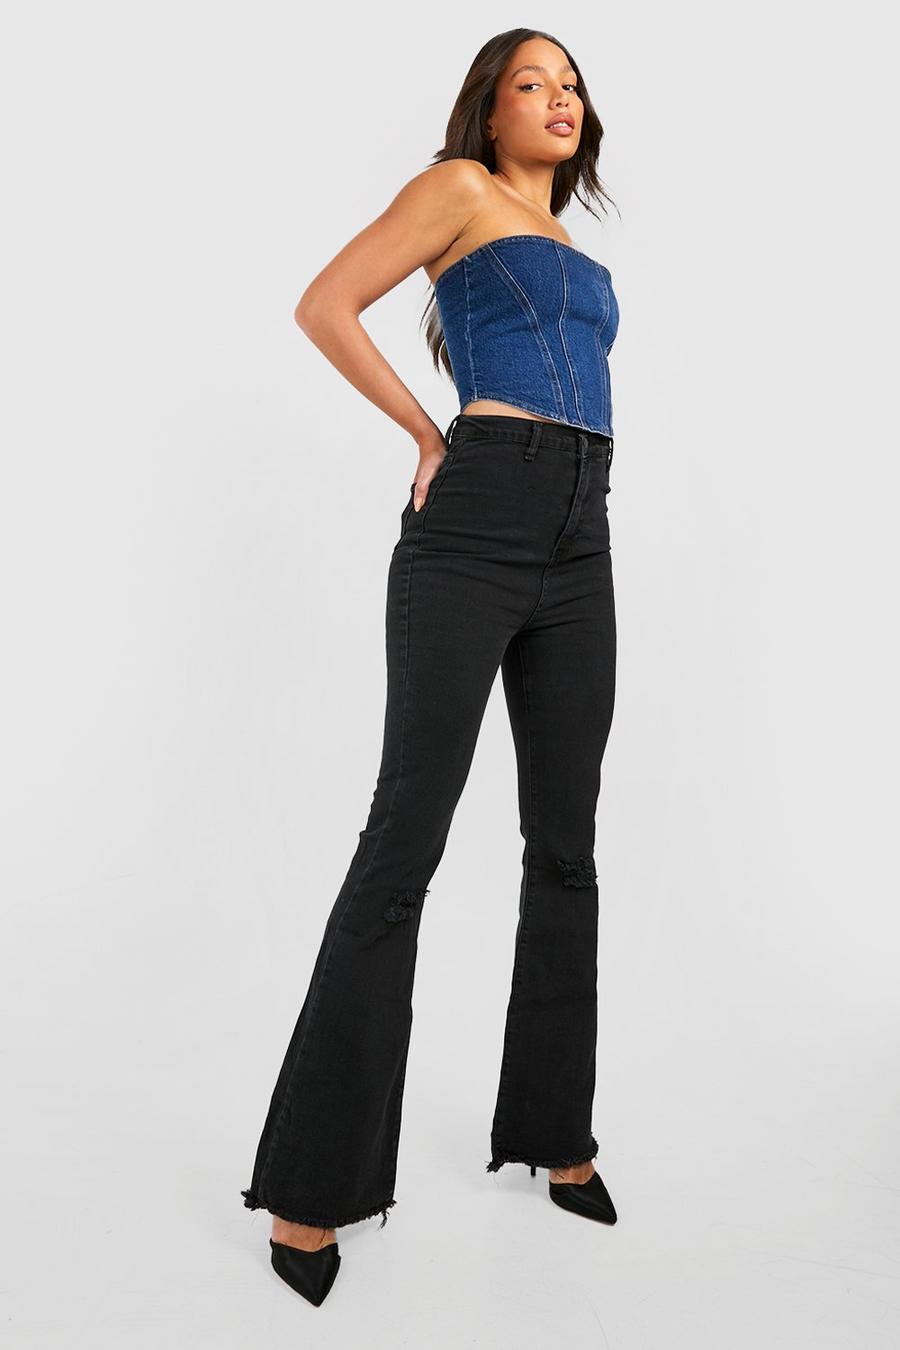 שחור negro מכנסי ג'ינס High Waisted מתרחבים מבד נמתח עם קרעים לנשים גבוהות image number 1